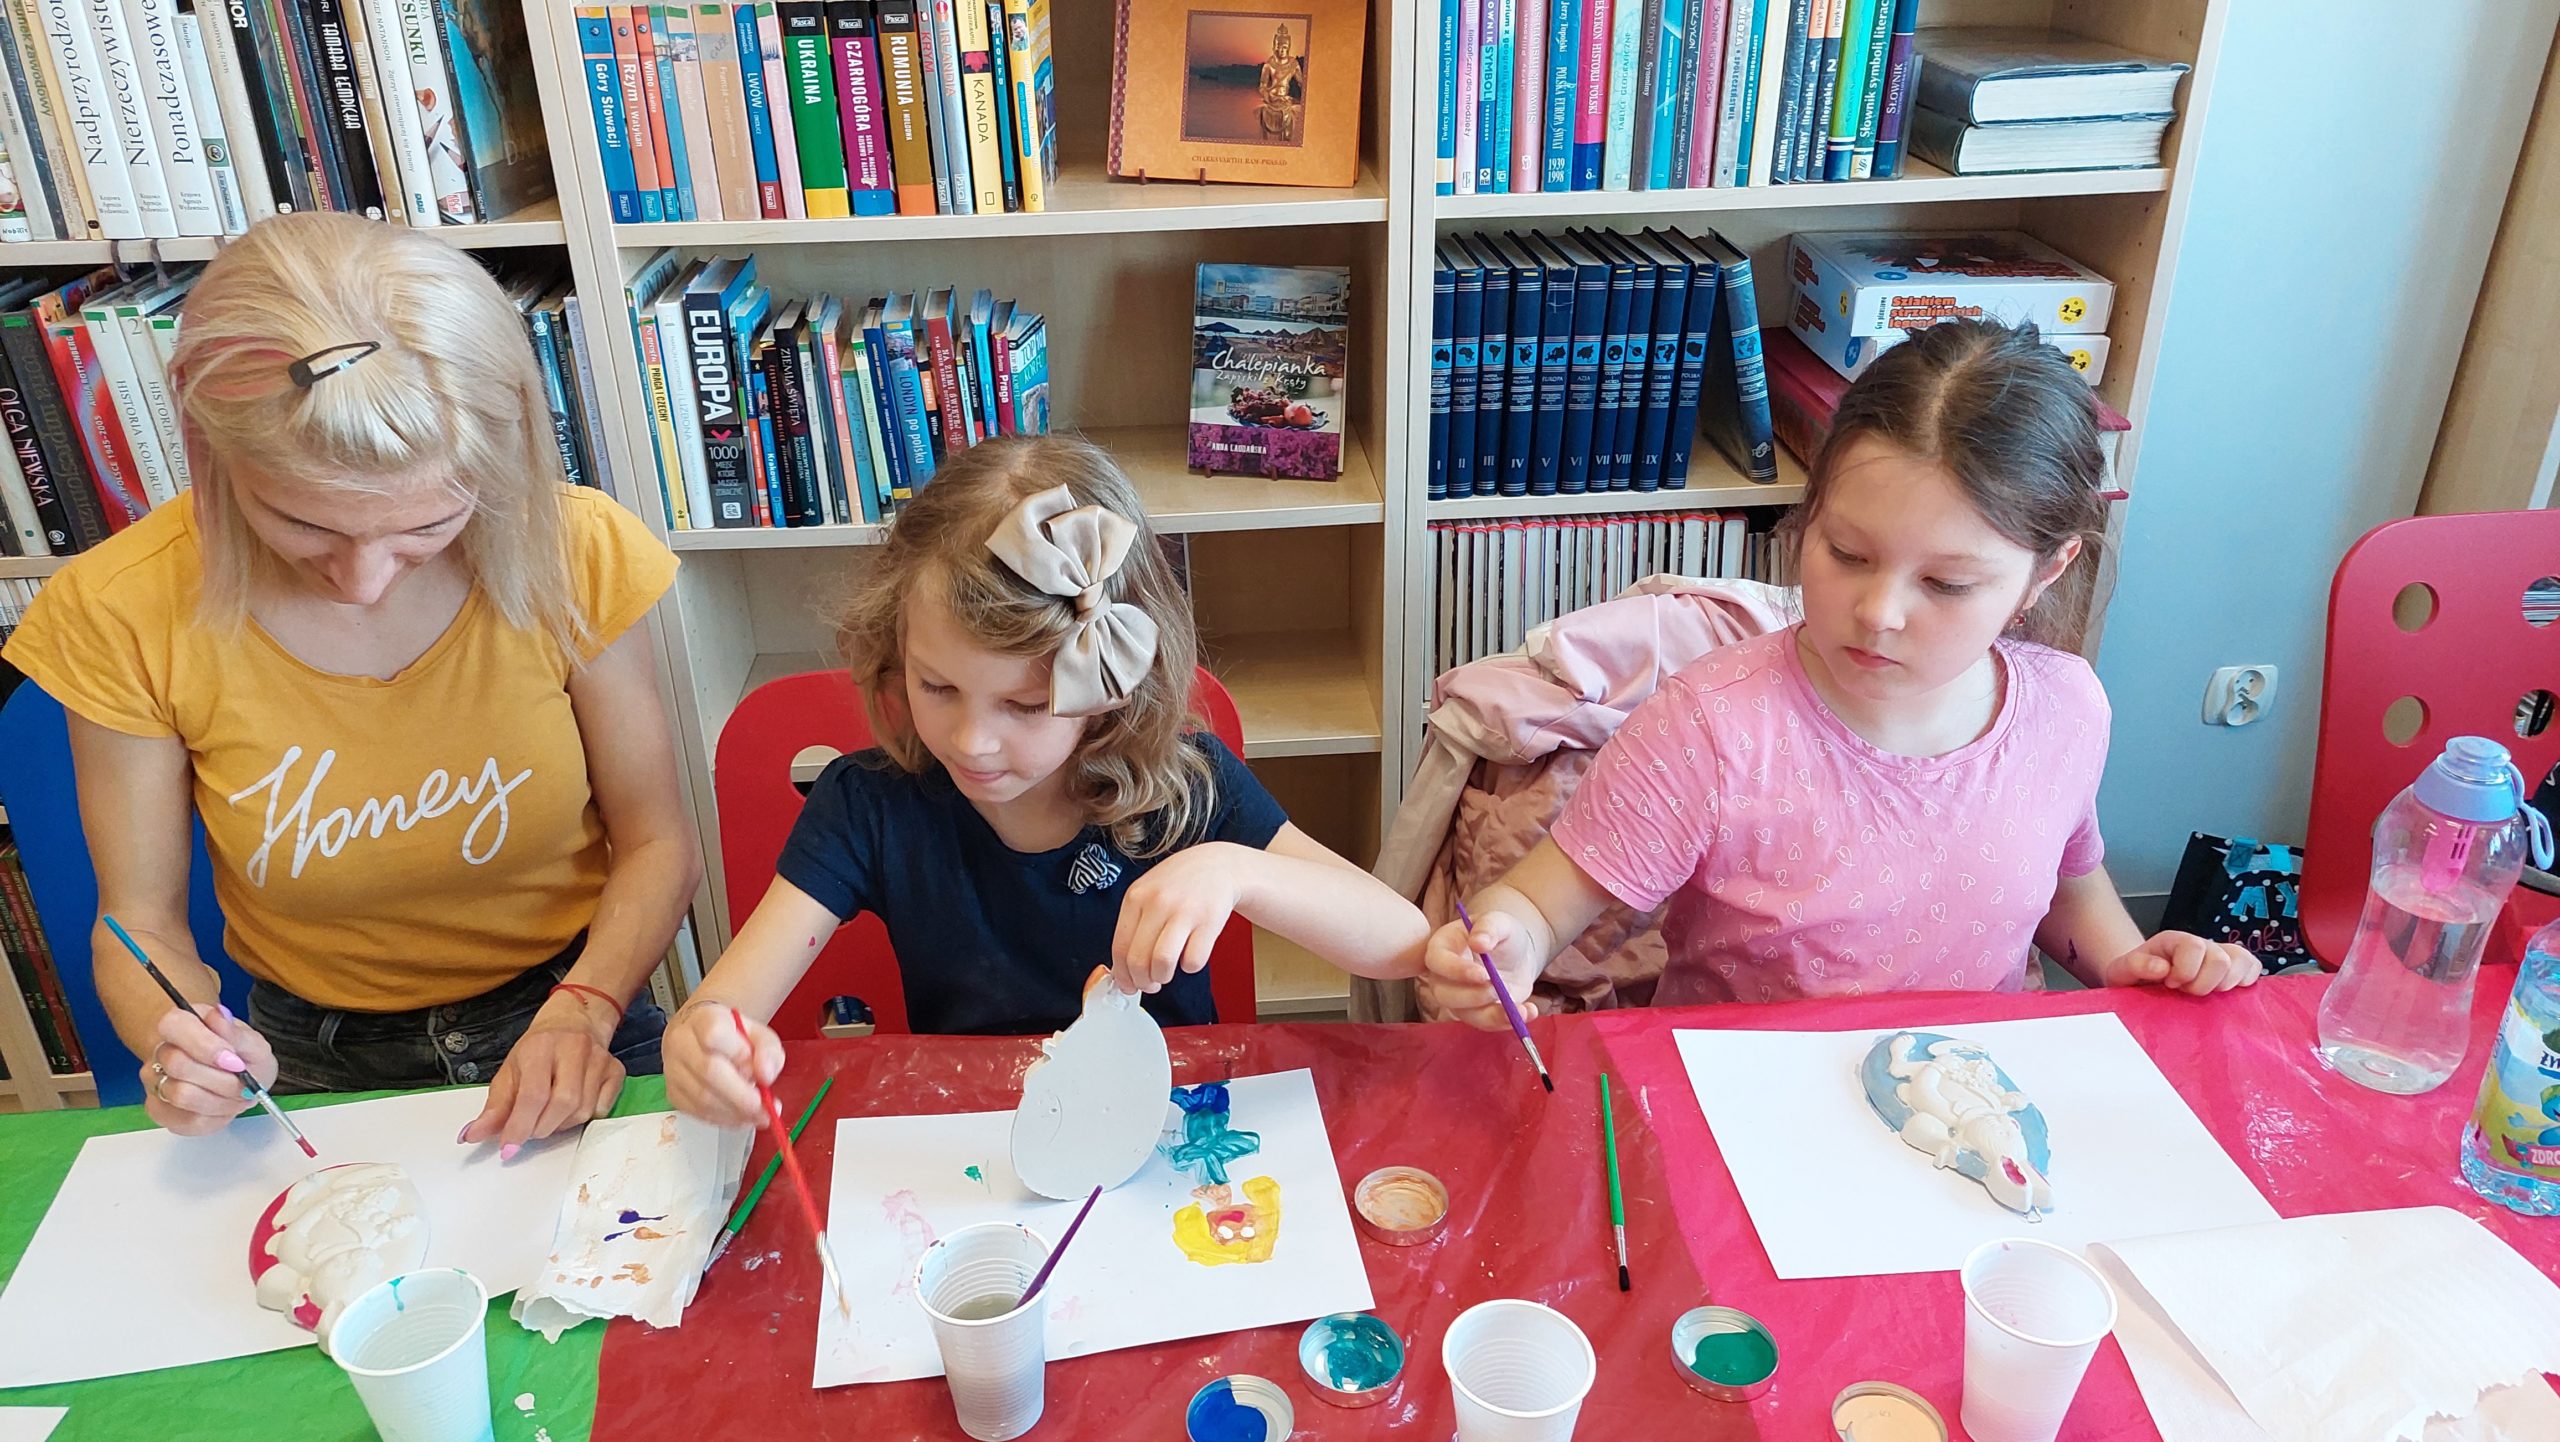 Czytelnia biblioteki. Kobieta i dwie dziewczynki malują gipsowe jajko z króliczkiem kolorowymi farbami.